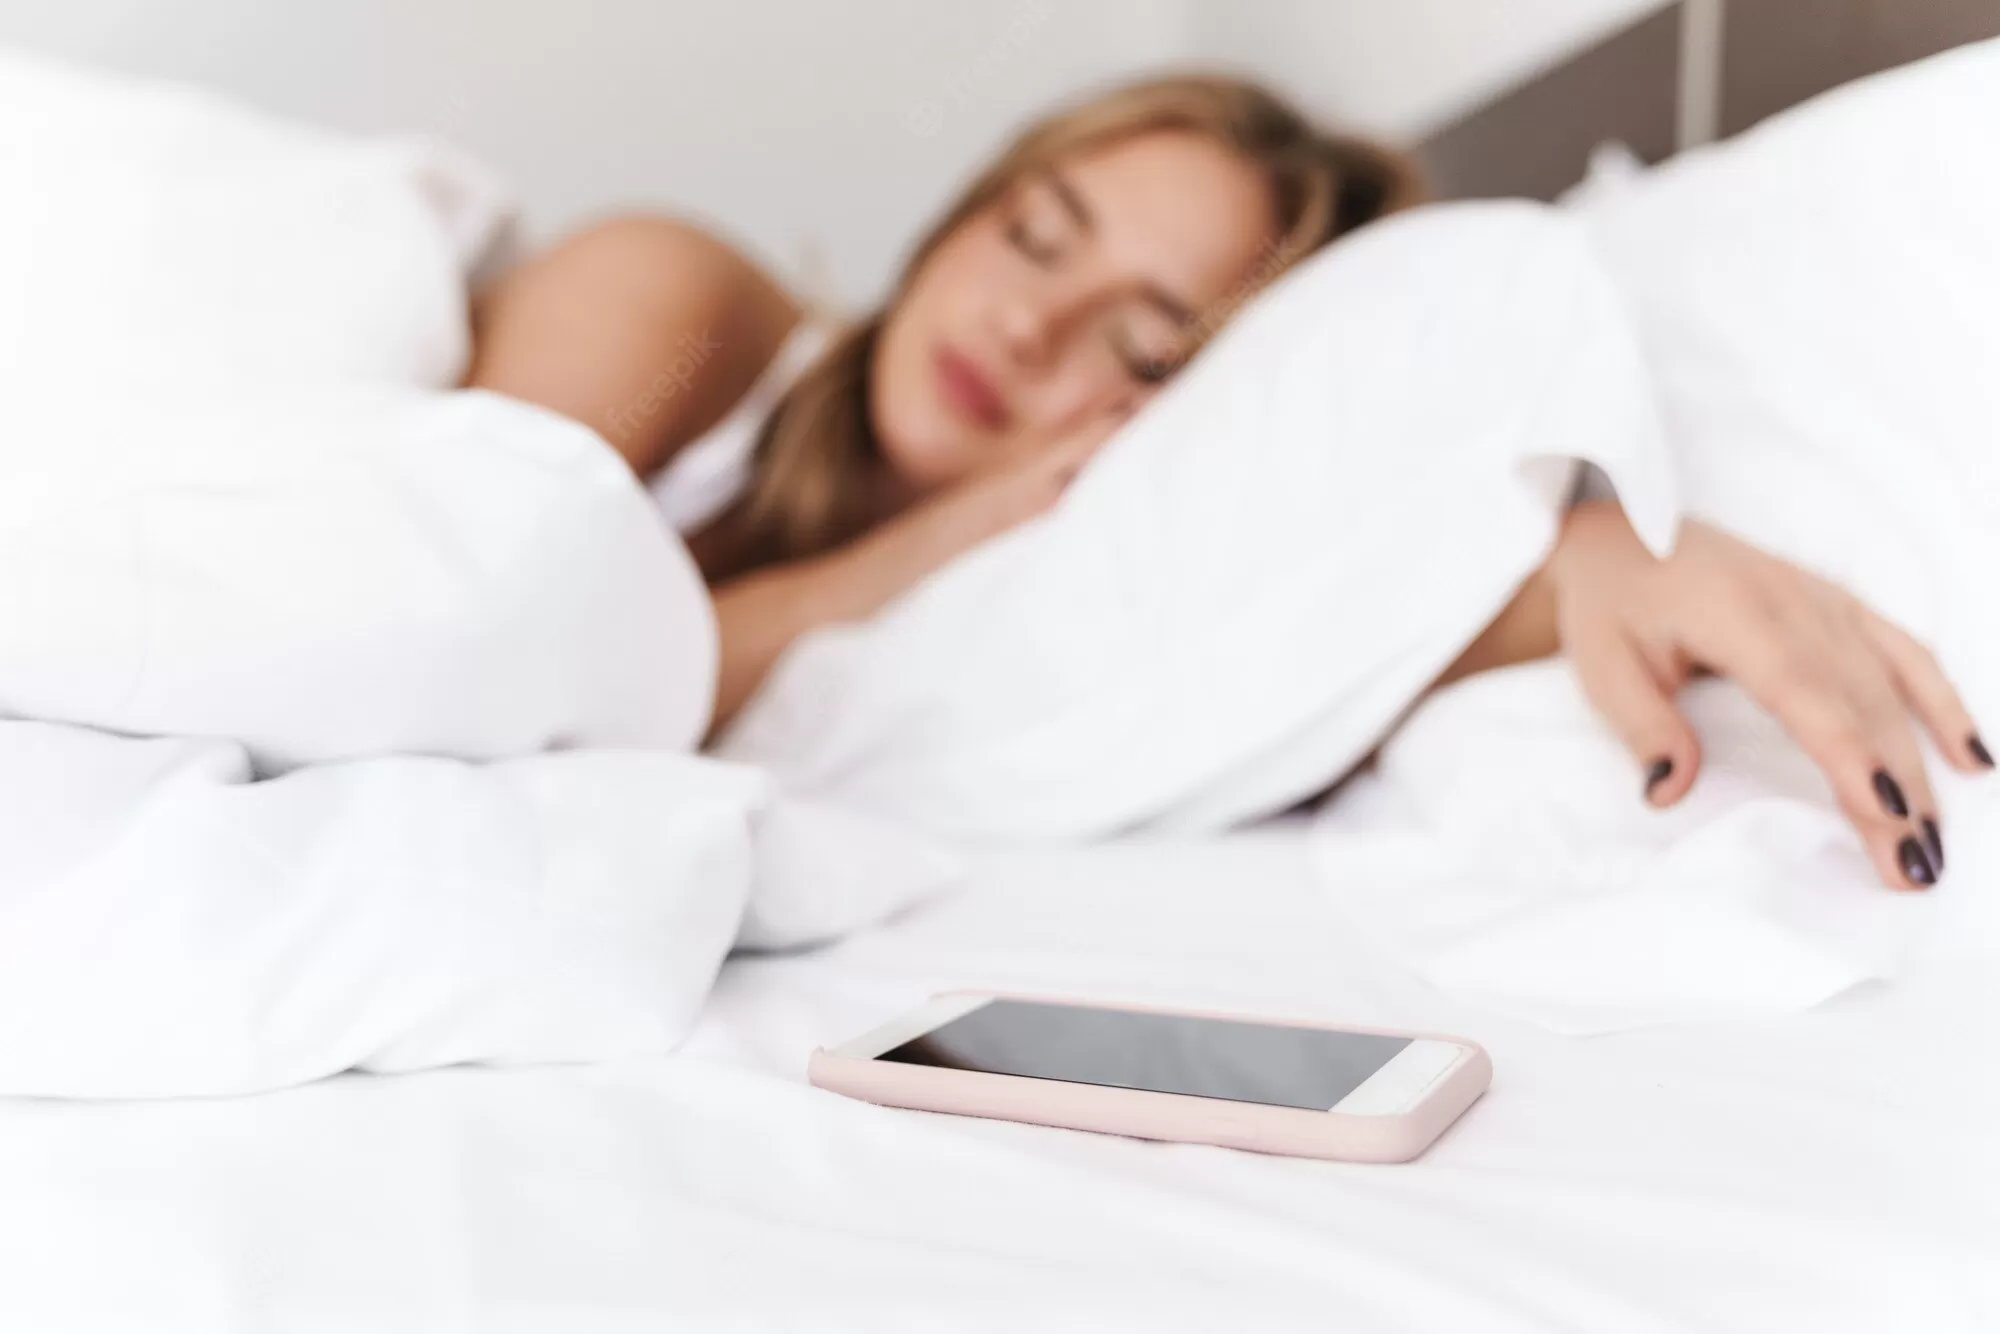 CUIDADO: Dormir com celular no travesseiro pode causar tragédia